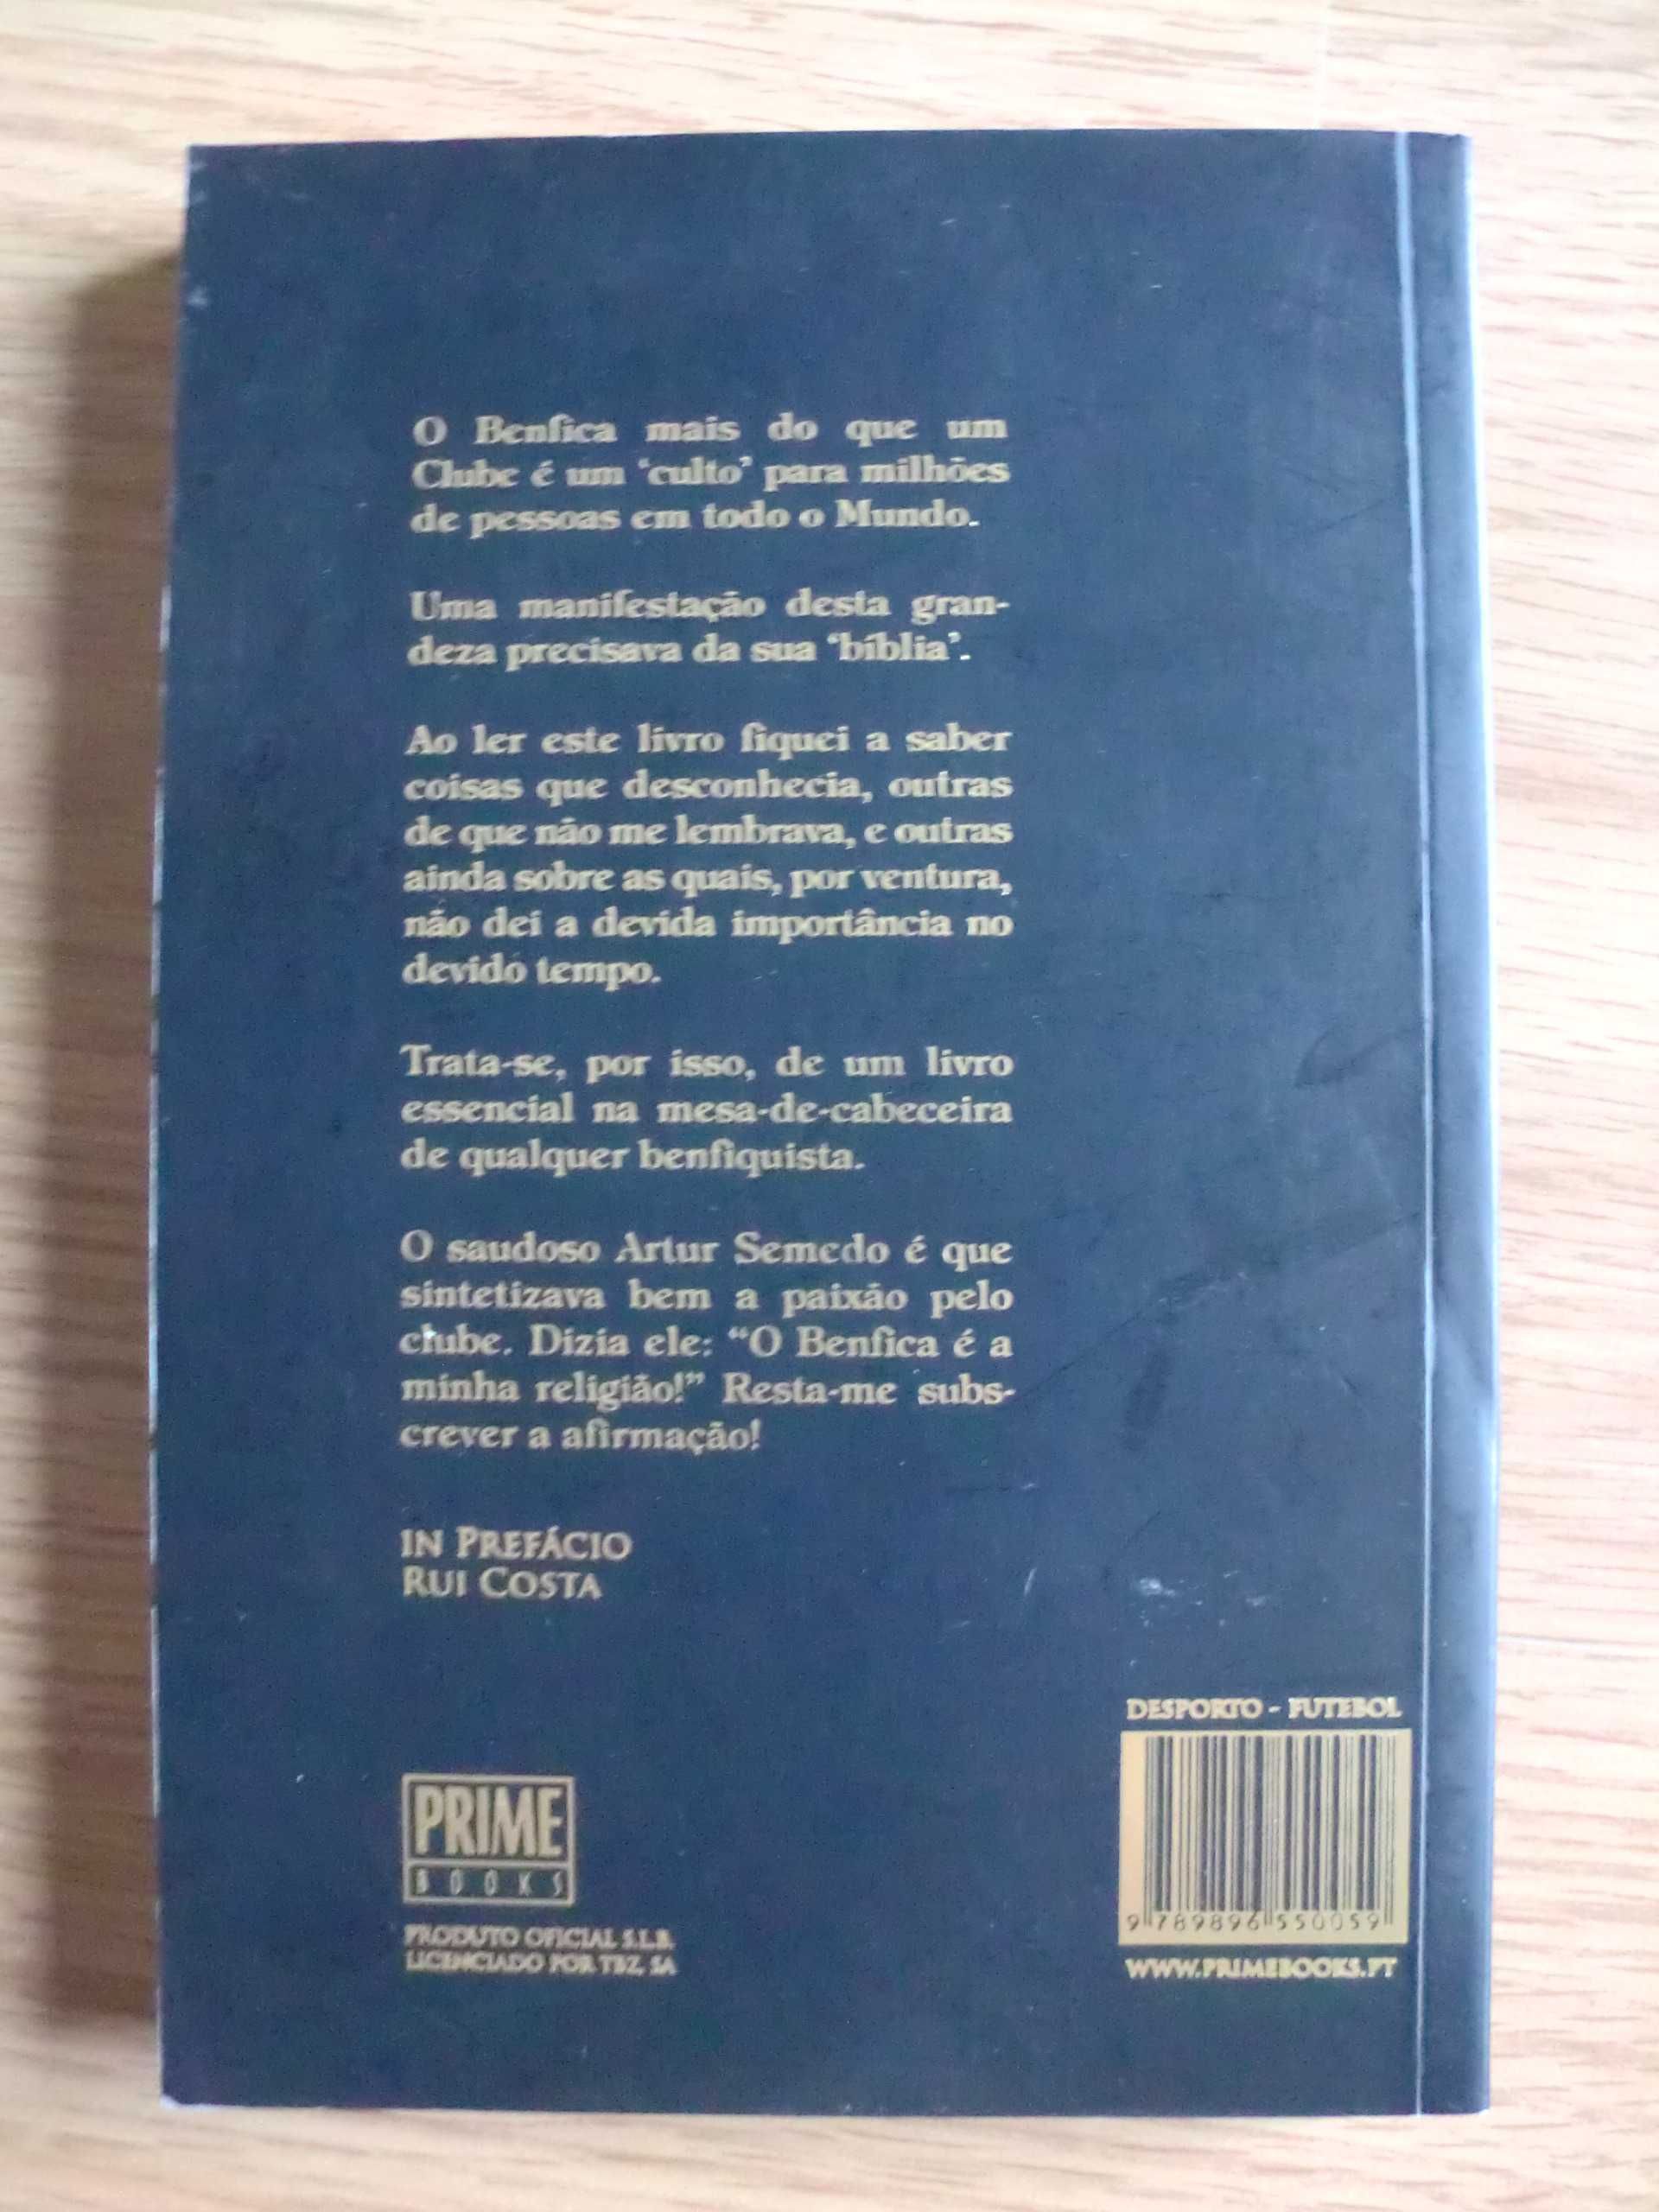 Bíblia do Benfica de Luís Miguel Pereira